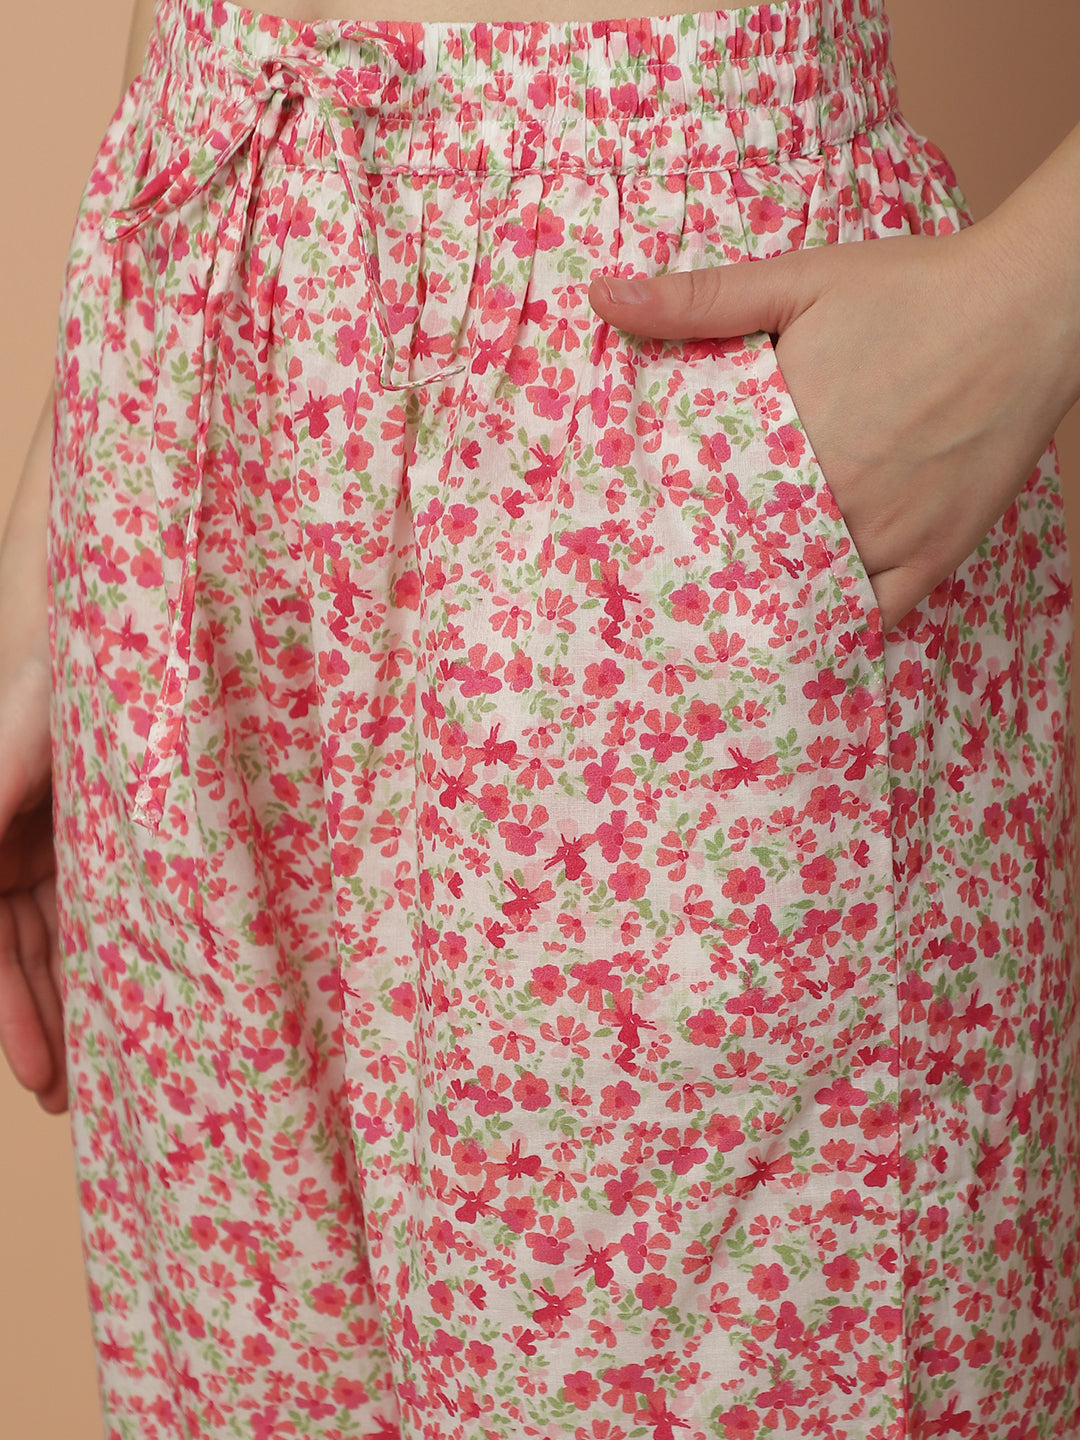 Blanc9 Ditsy Pink Floral Pyjama Set-B9NW18N